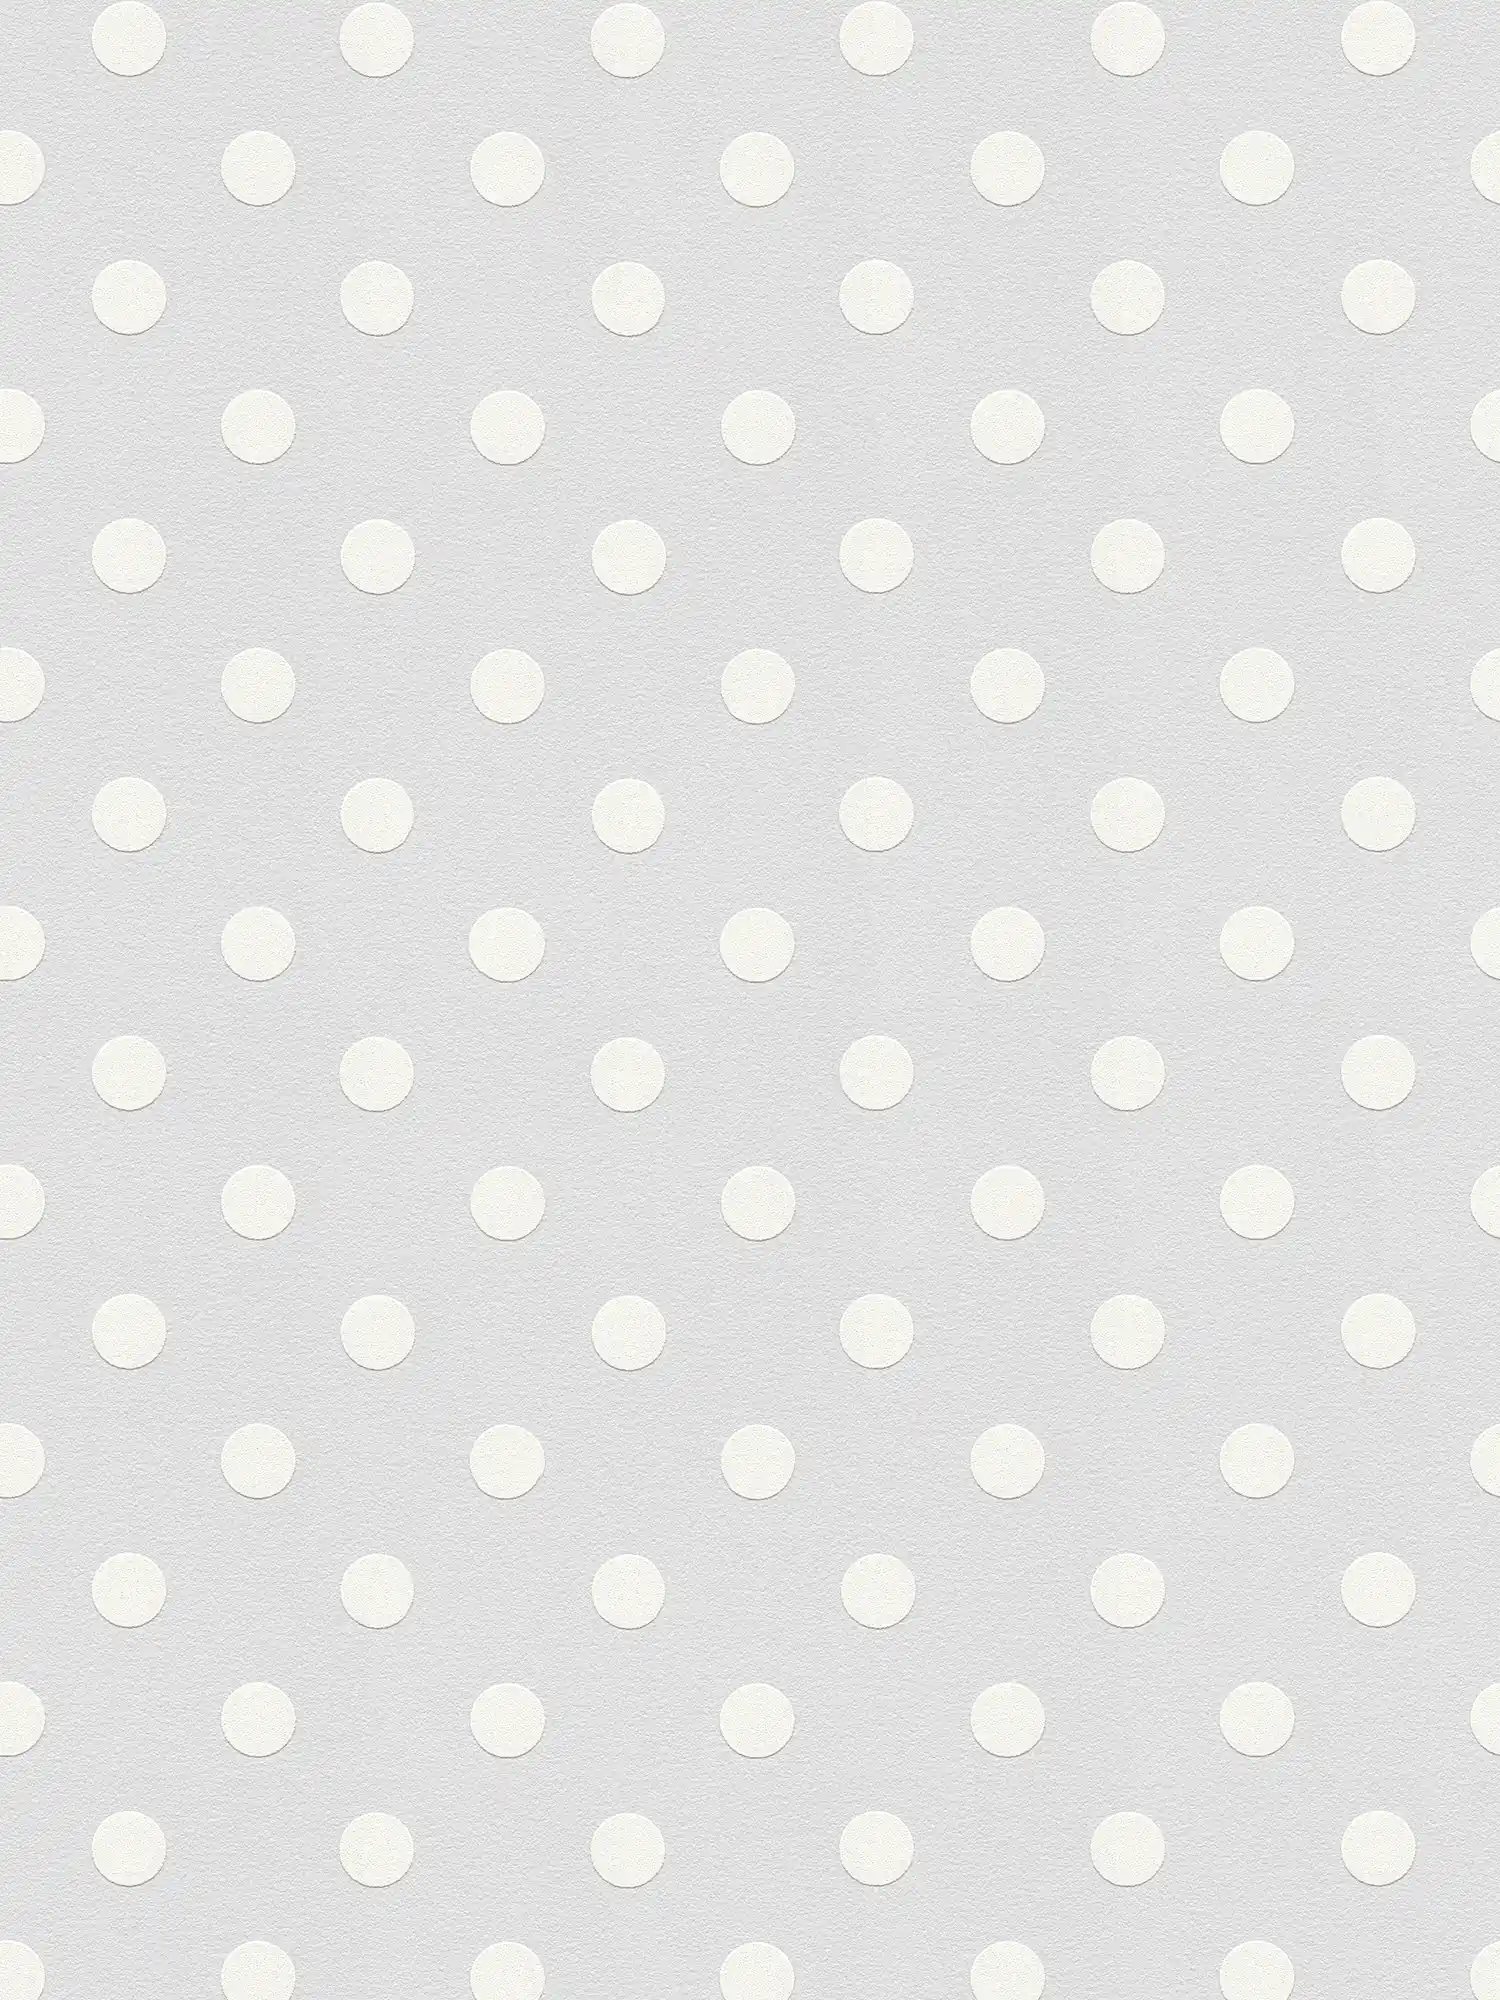 Gepunktete Tapete Polka Dots Design – Grau, Weiß
